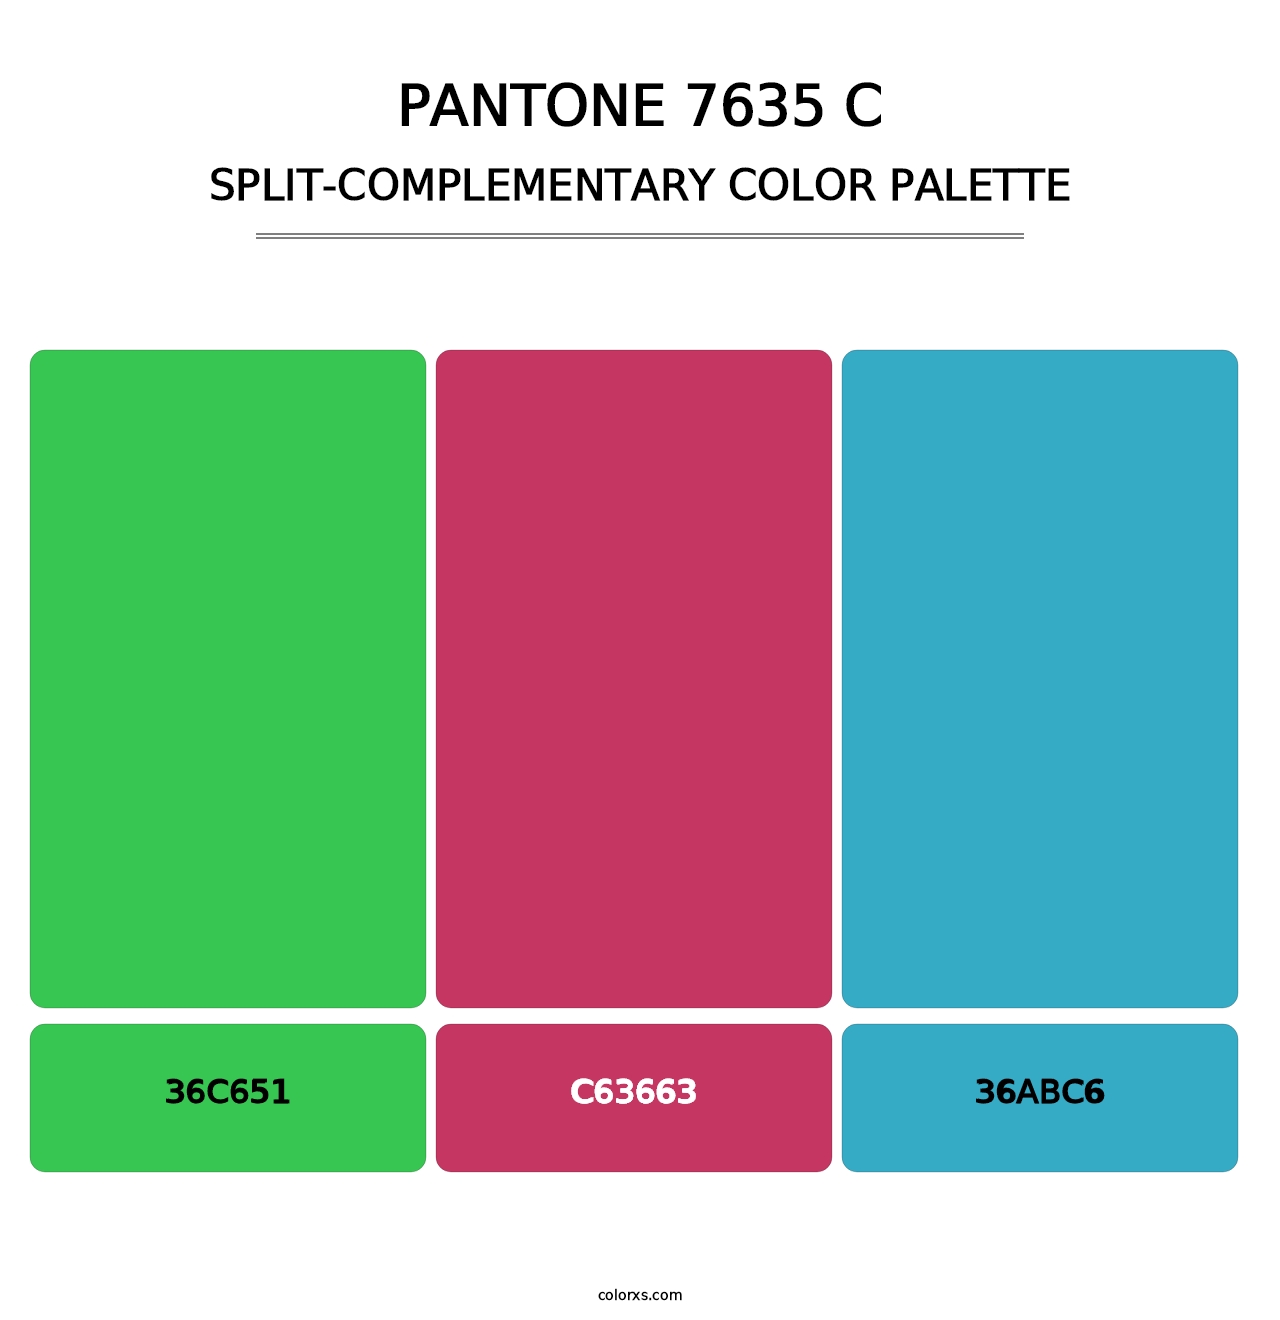 PANTONE 7635 C - Split-Complementary Color Palette